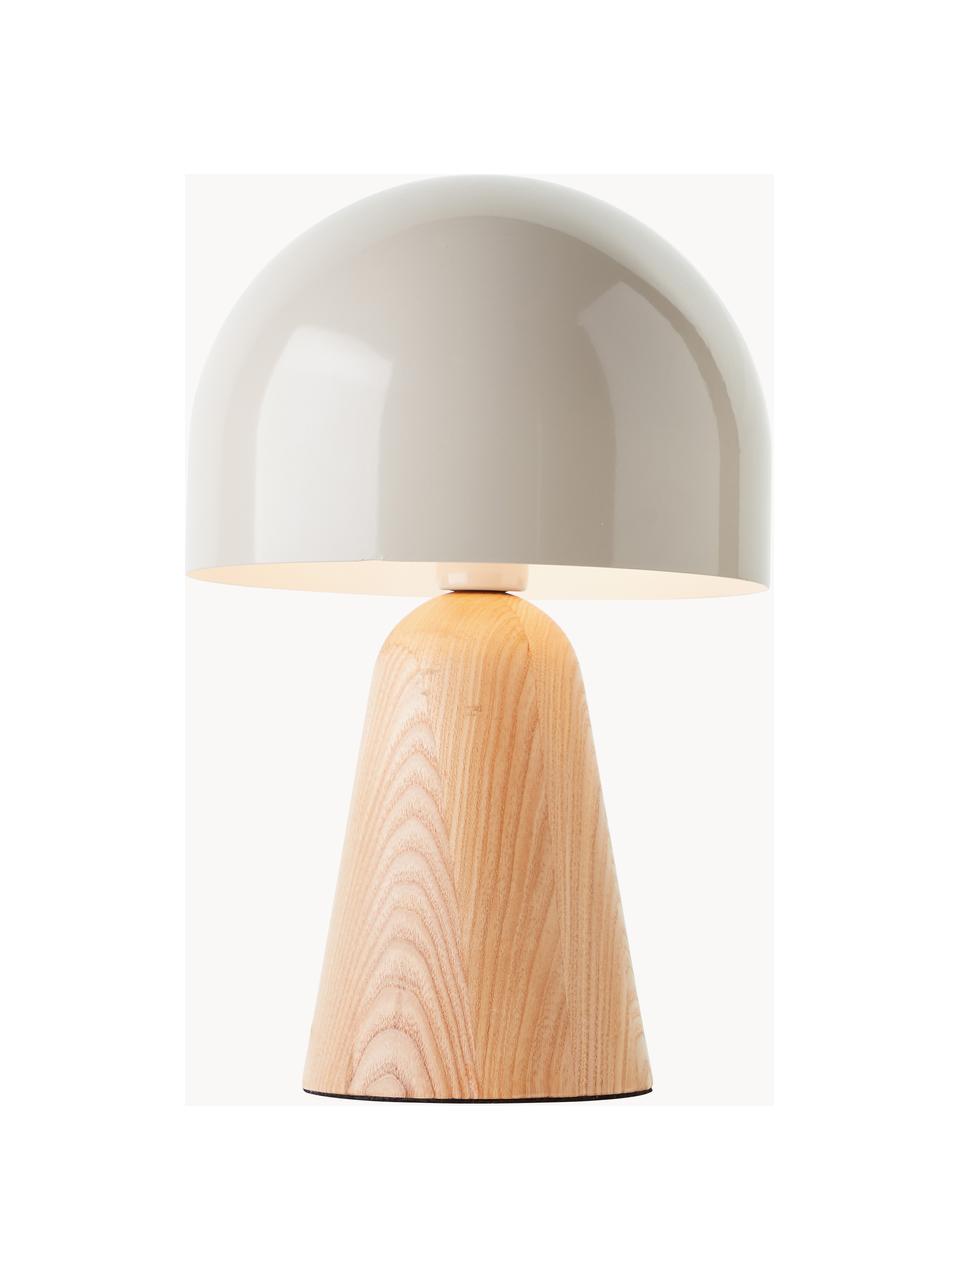 Kleine Tischlampe Nalam, Lampenschirm: Metall, beschichtet, Lampenfuß: Holz, FSC-zertifiziert, Hellbeige, Helles Holz, Ø 20 x H 31 cm